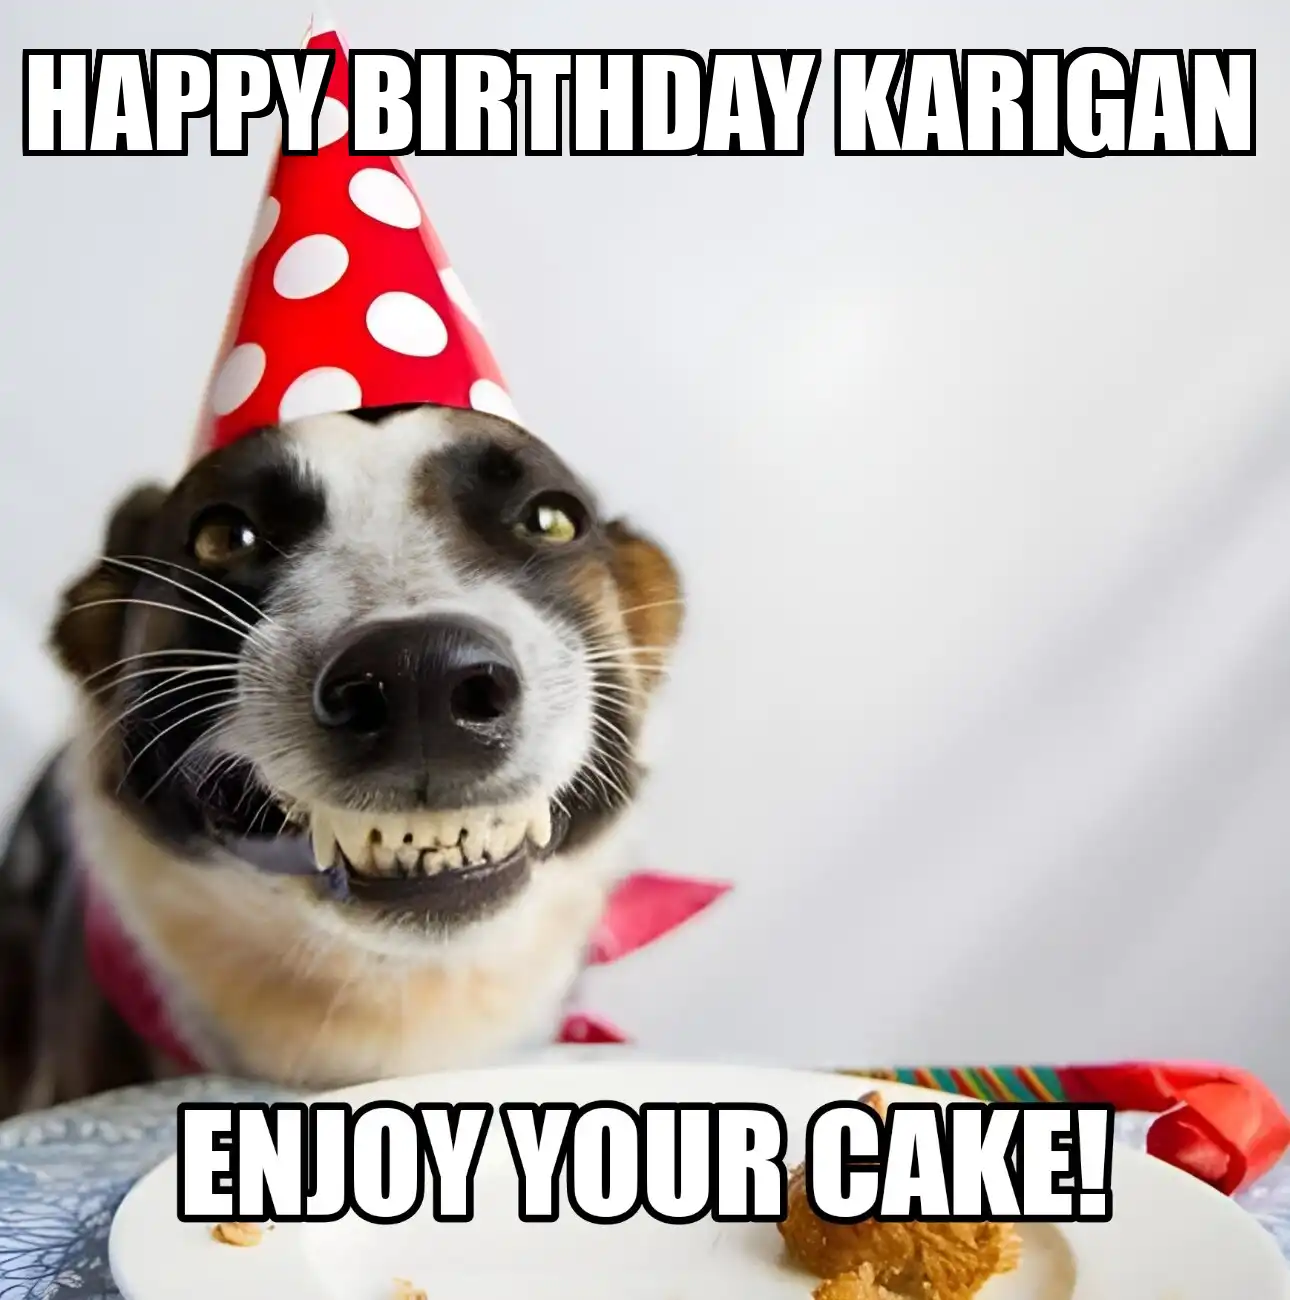 Happy Birthday Karigan Enjoy Your Cake Dog Meme